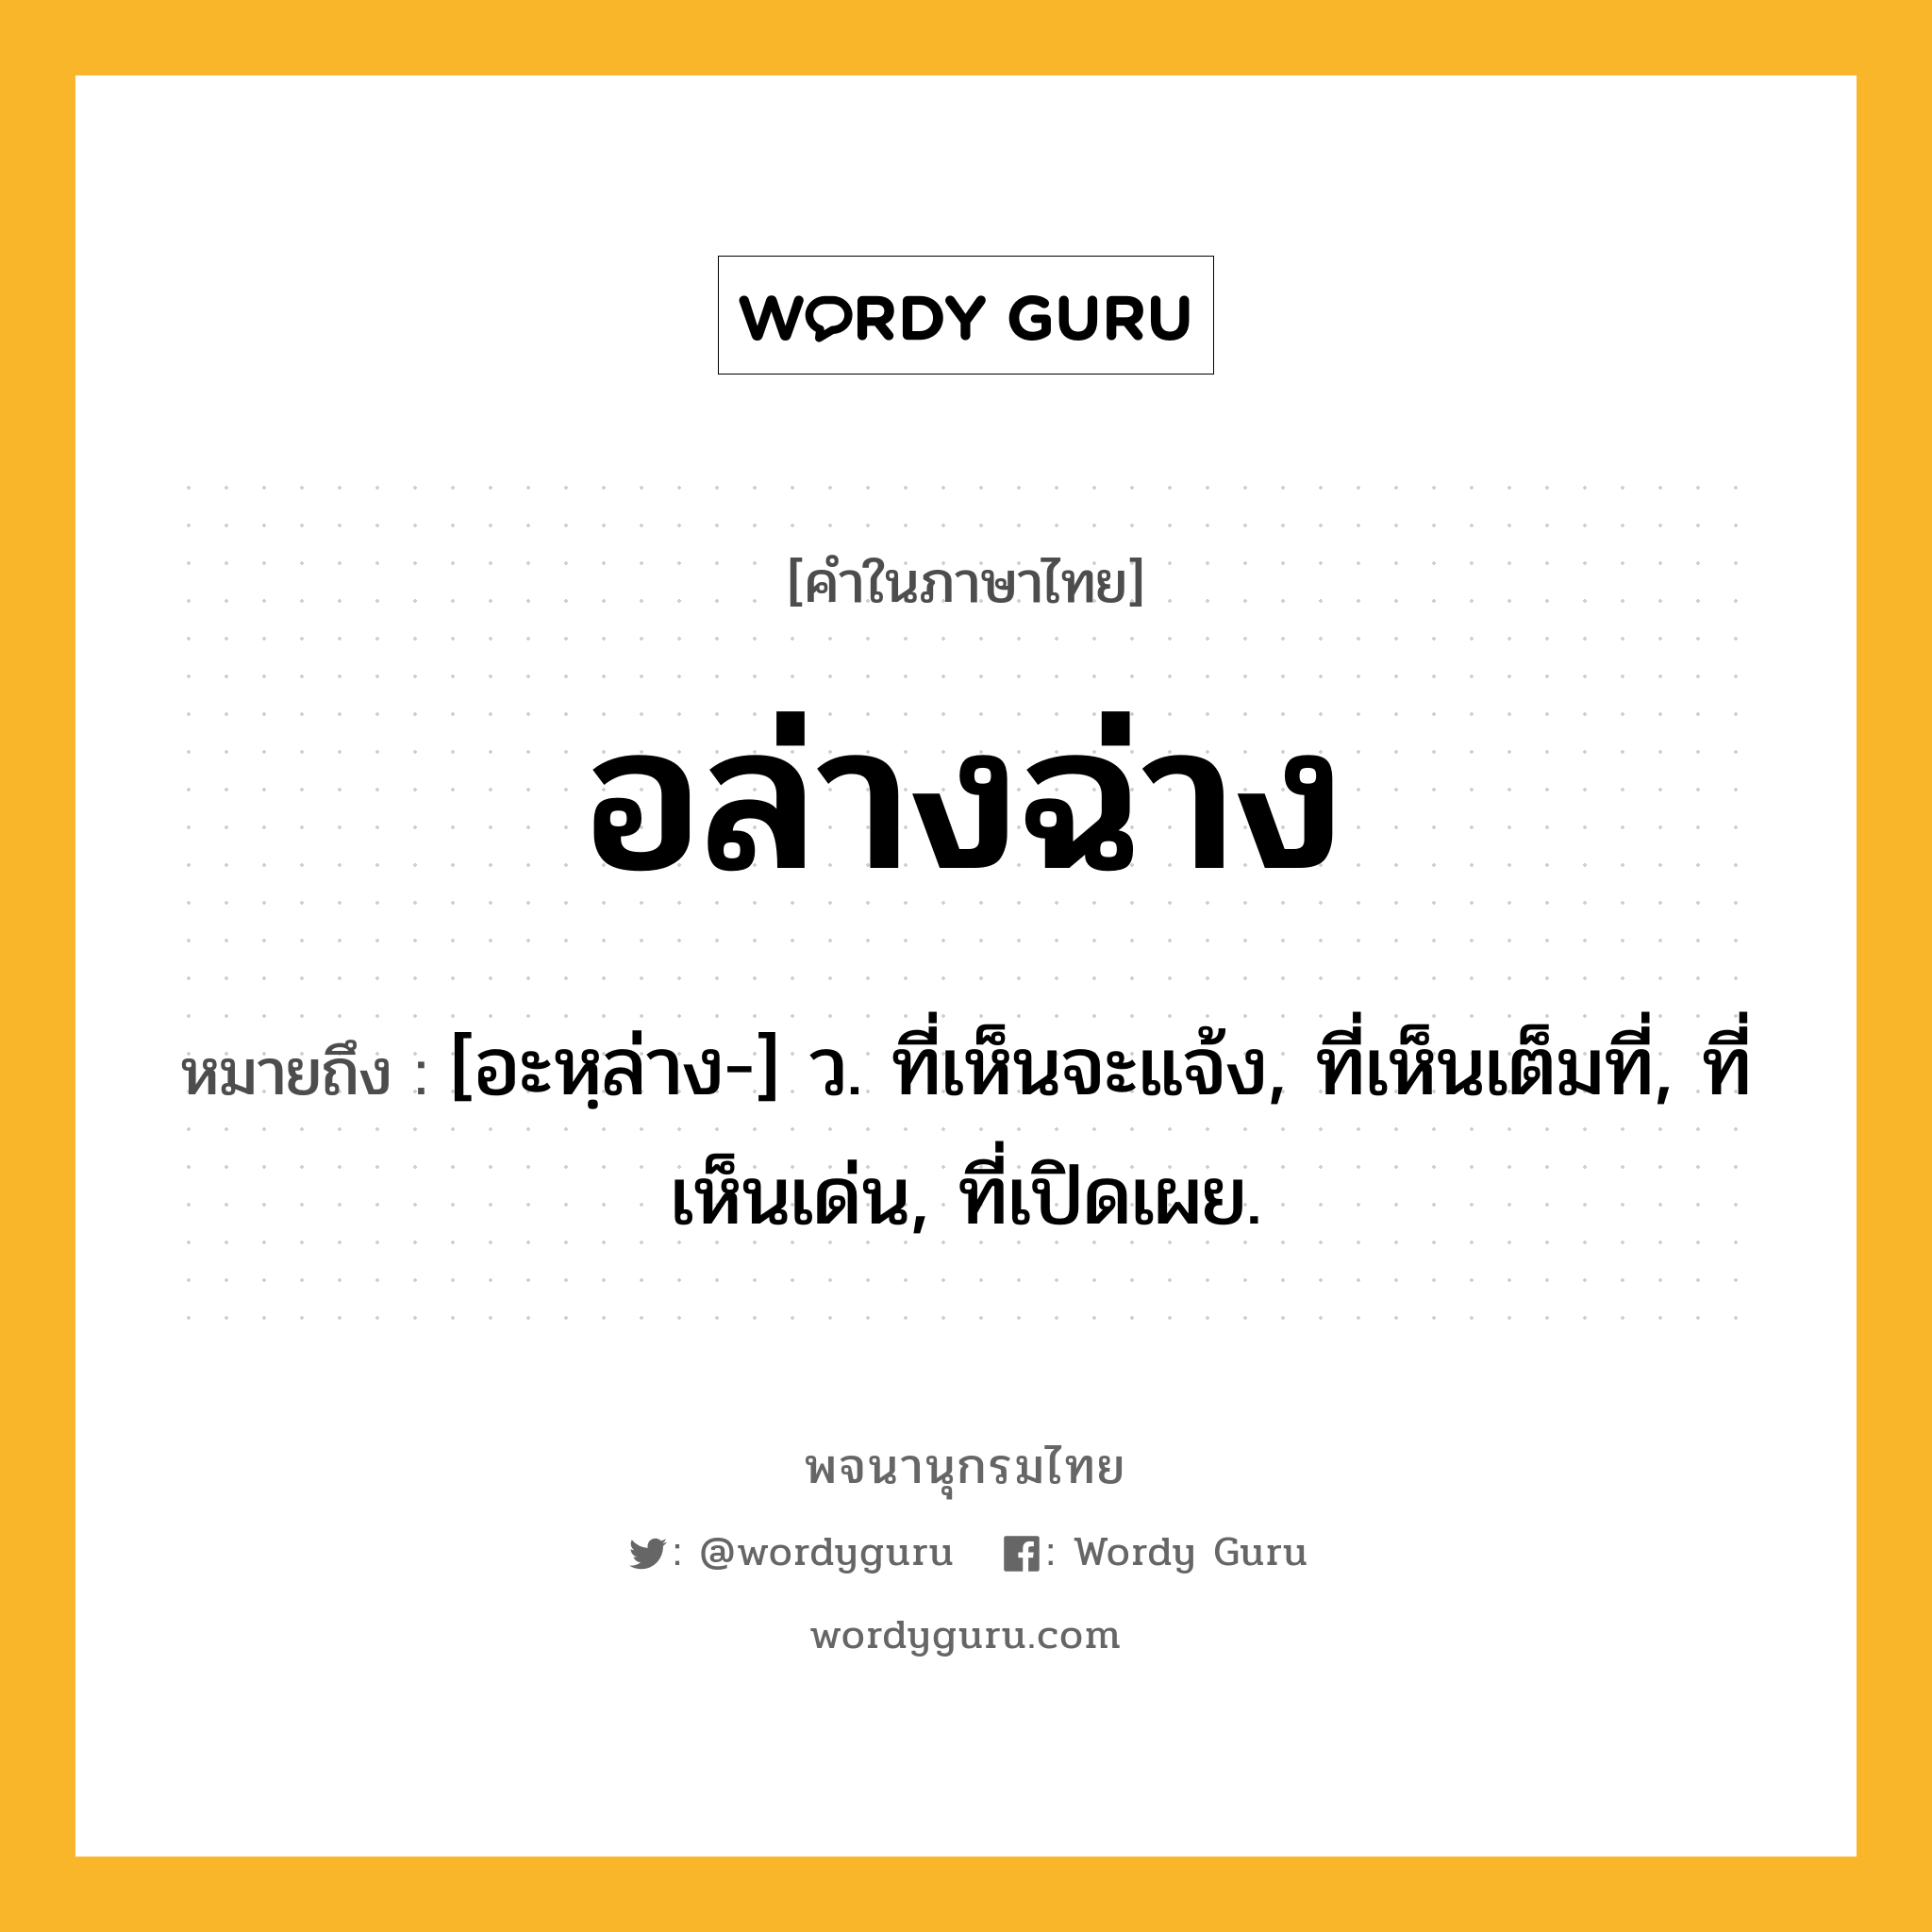 อล่างฉ่าง หมายถึงอะไร?, คำในภาษาไทย อล่างฉ่าง หมายถึง [อะหฺล่าง-] ว. ที่เห็นจะแจ้ง, ที่เห็นเต็มที่, ที่เห็นเด่น, ที่เปิดเผย.